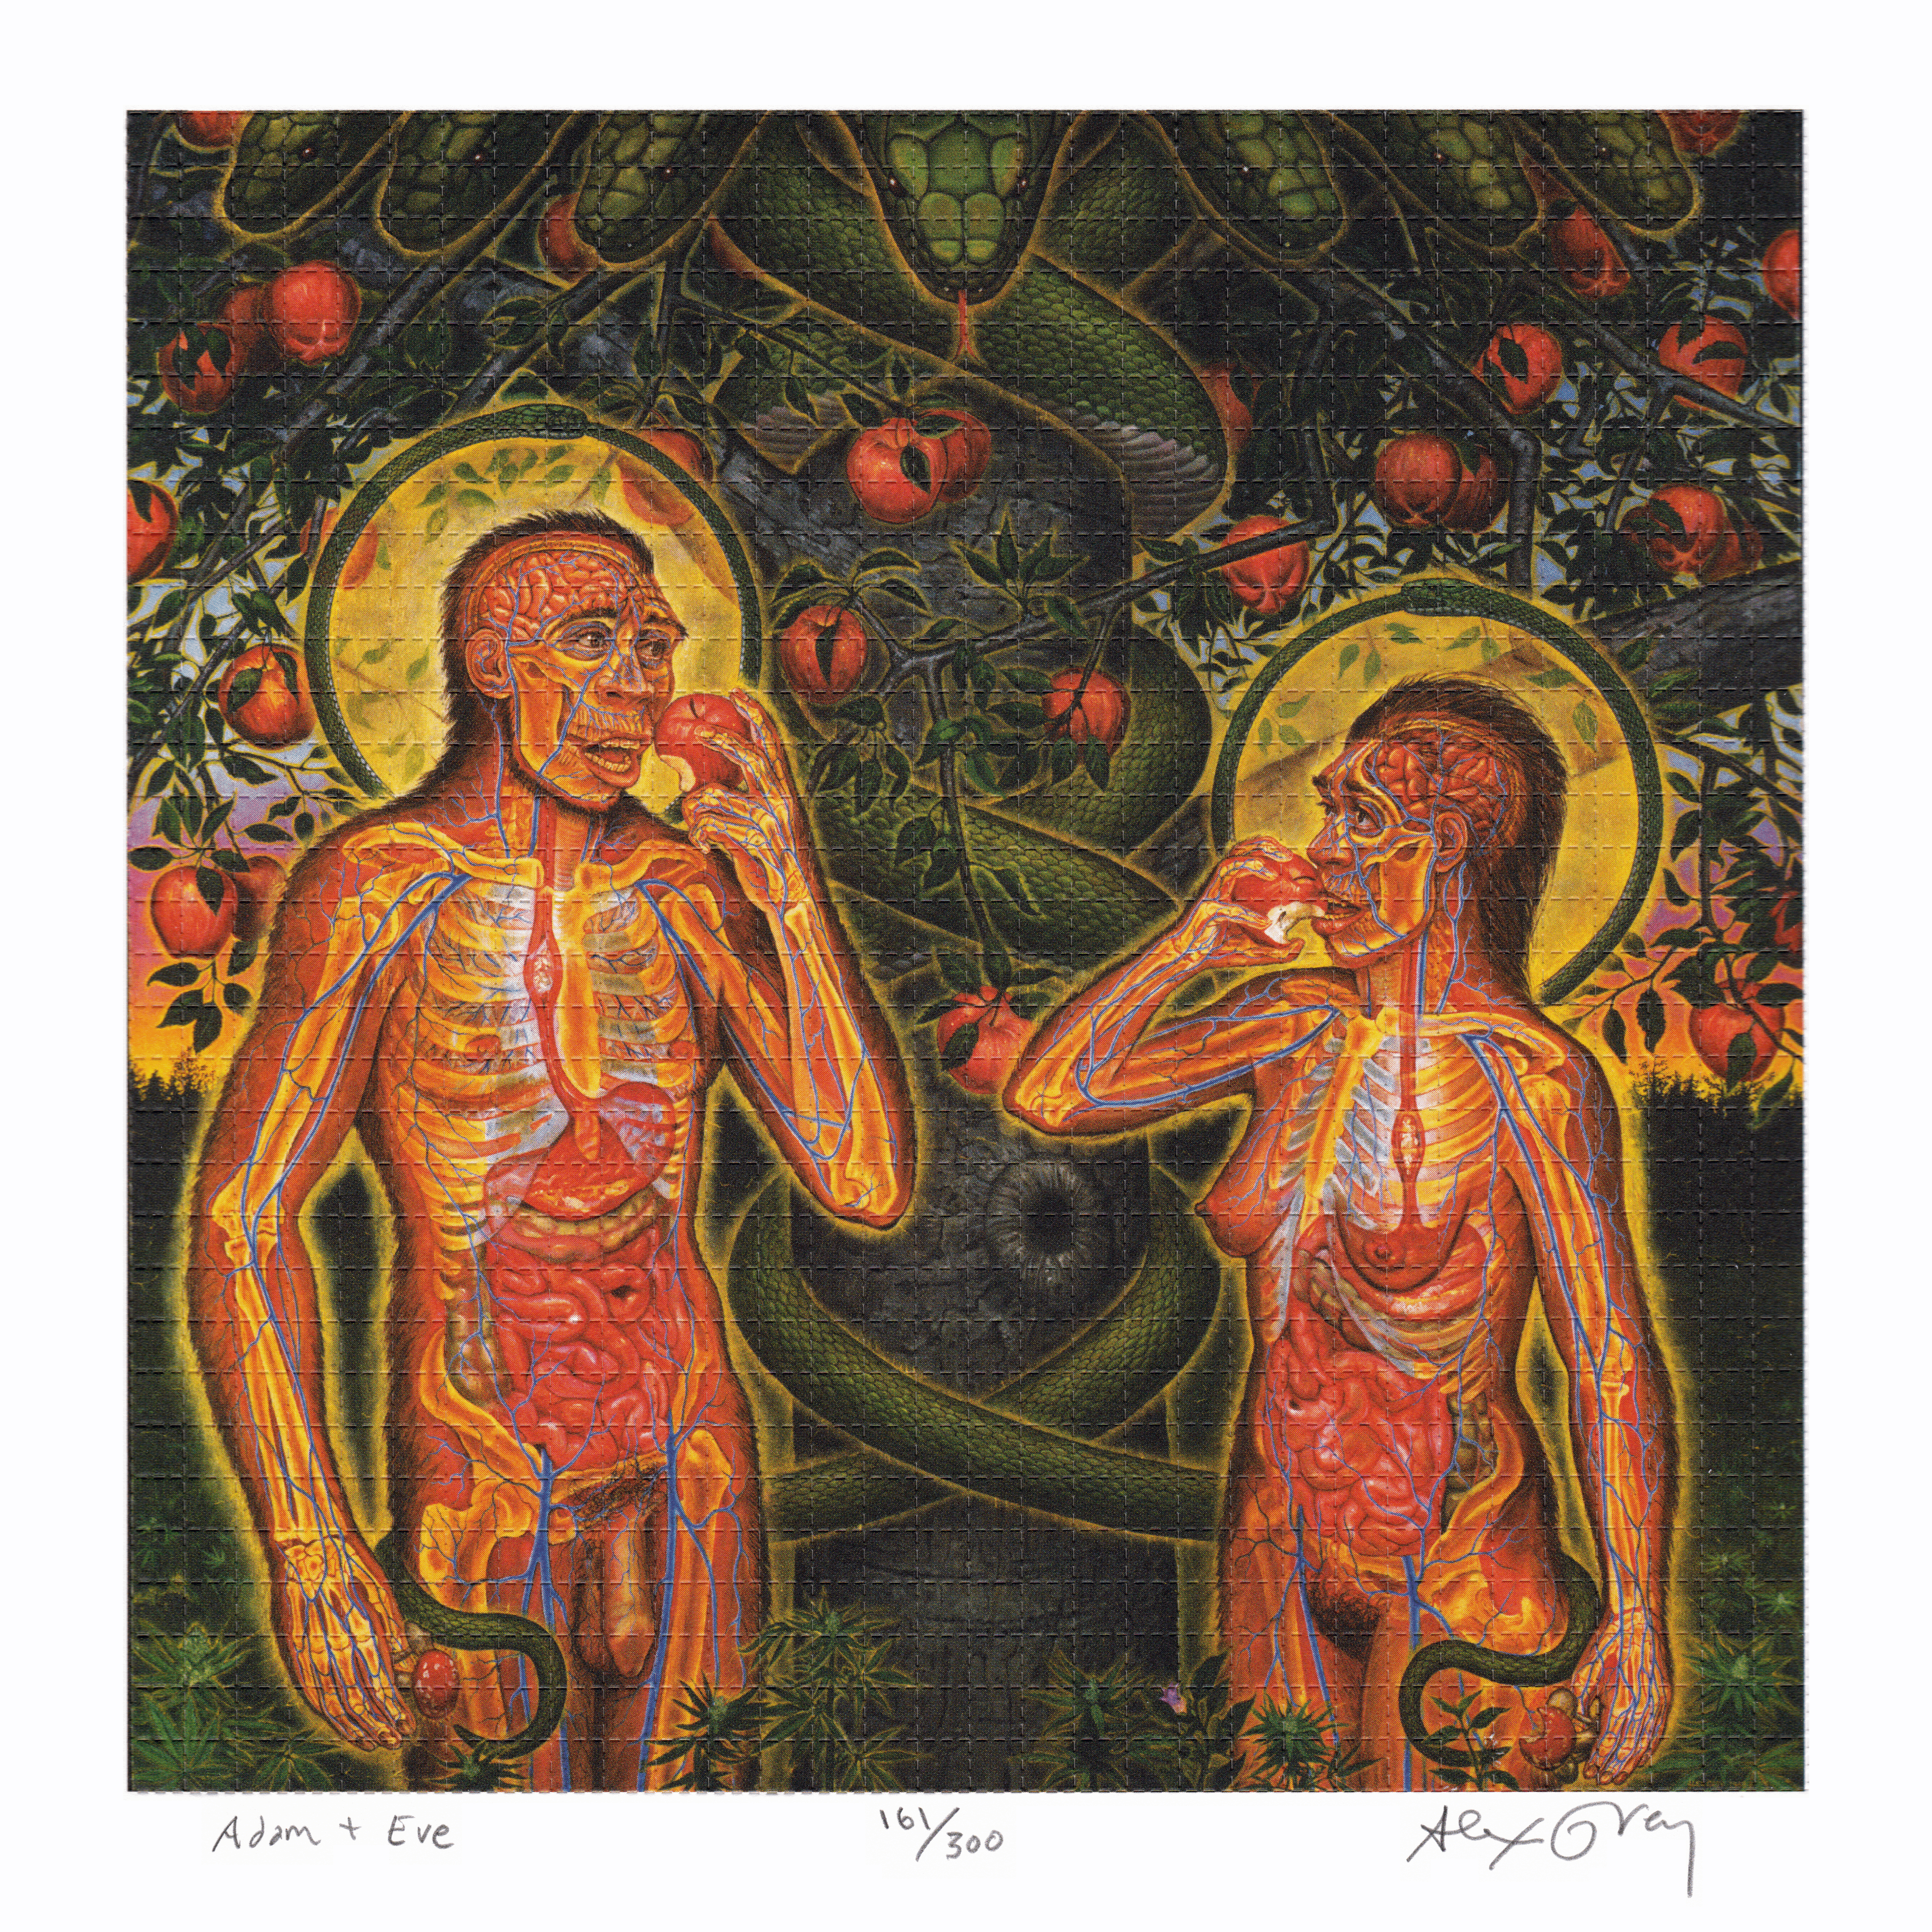 Adam & Eve by Alex Grey as LSD Blotter Art #161/300